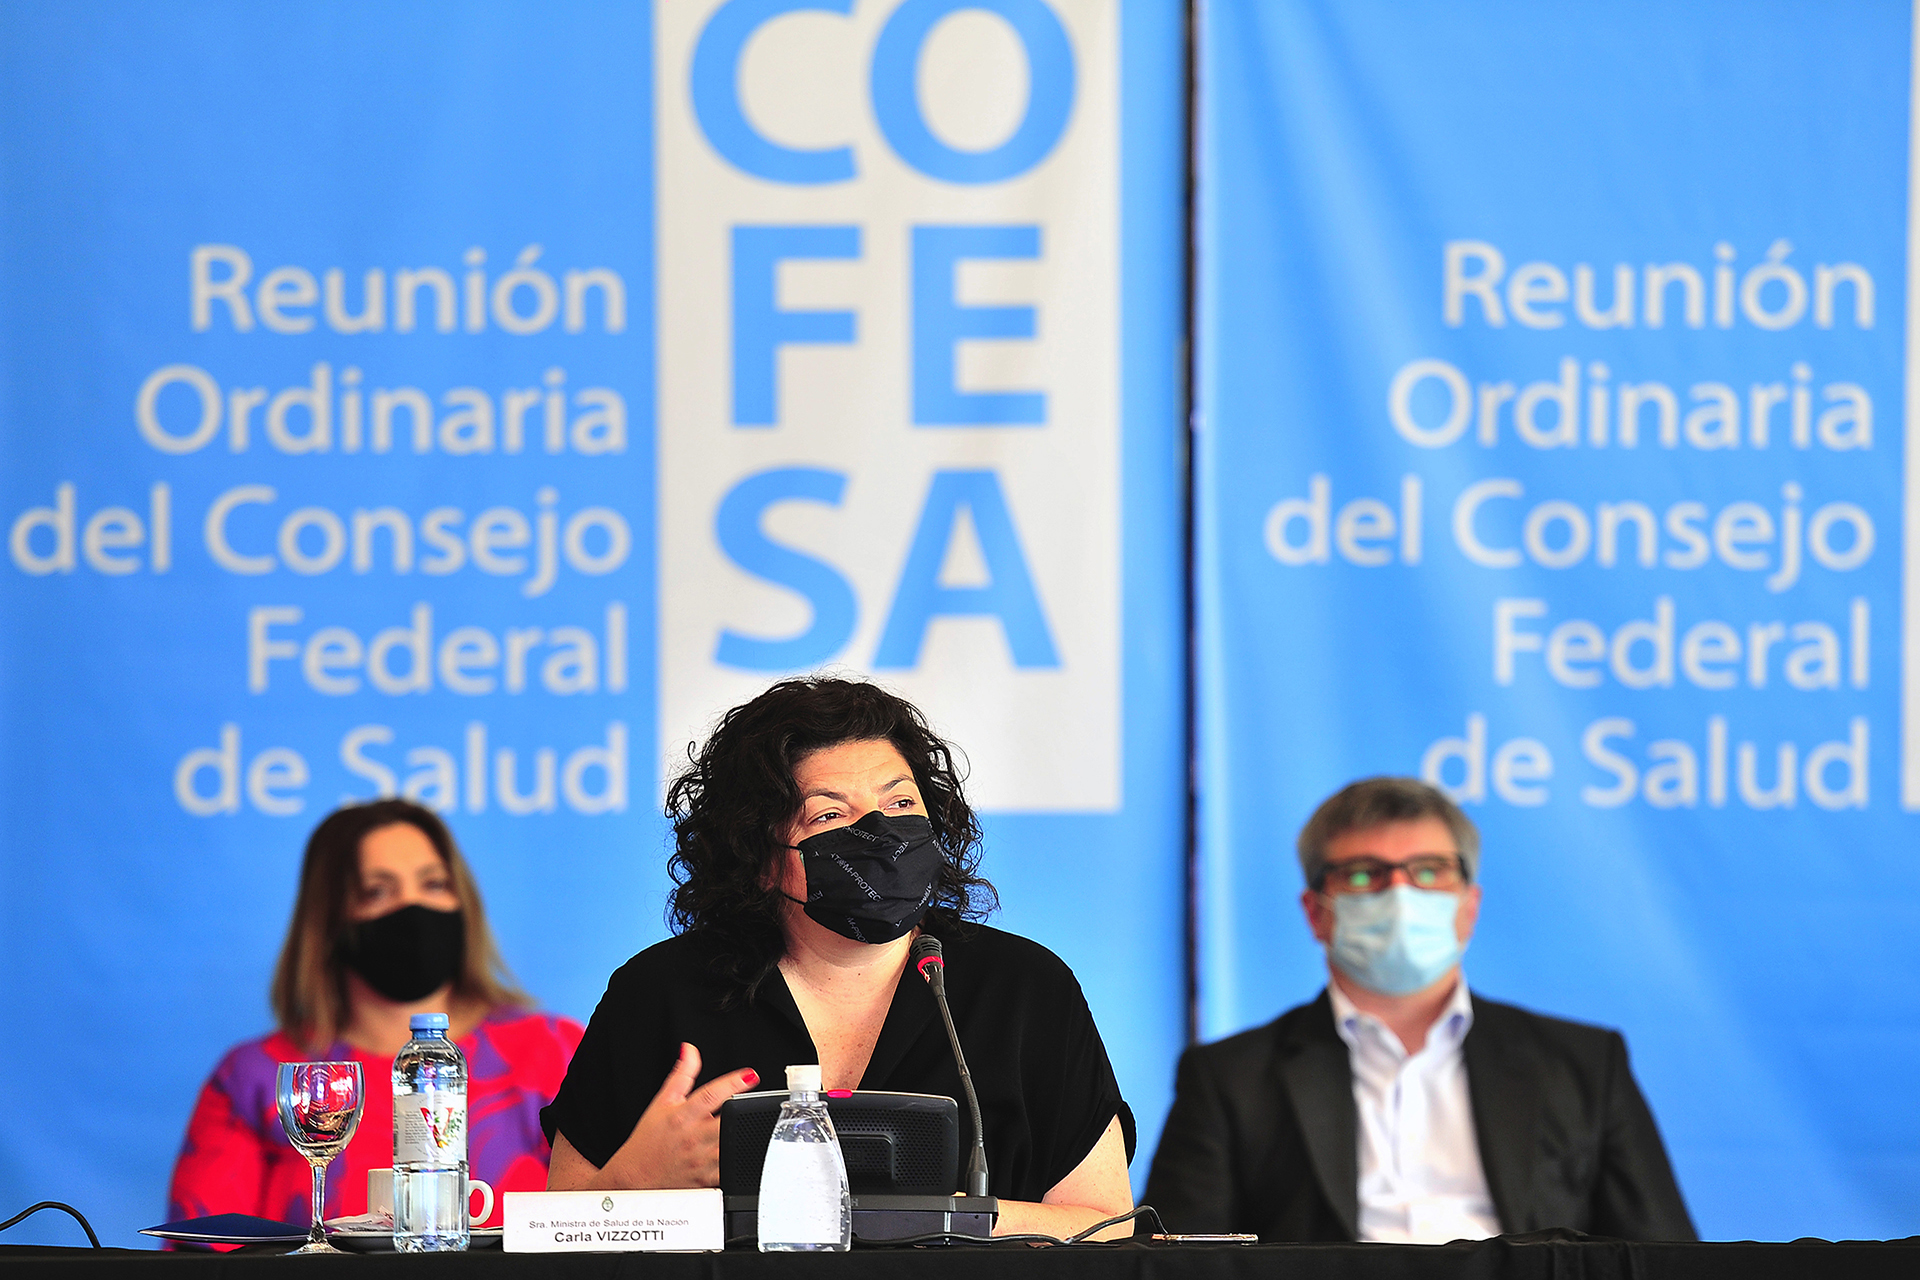 Entre Ríos participó del Consejo Federal de Salud desarrollado en San Luis  - Ministerio de Salud